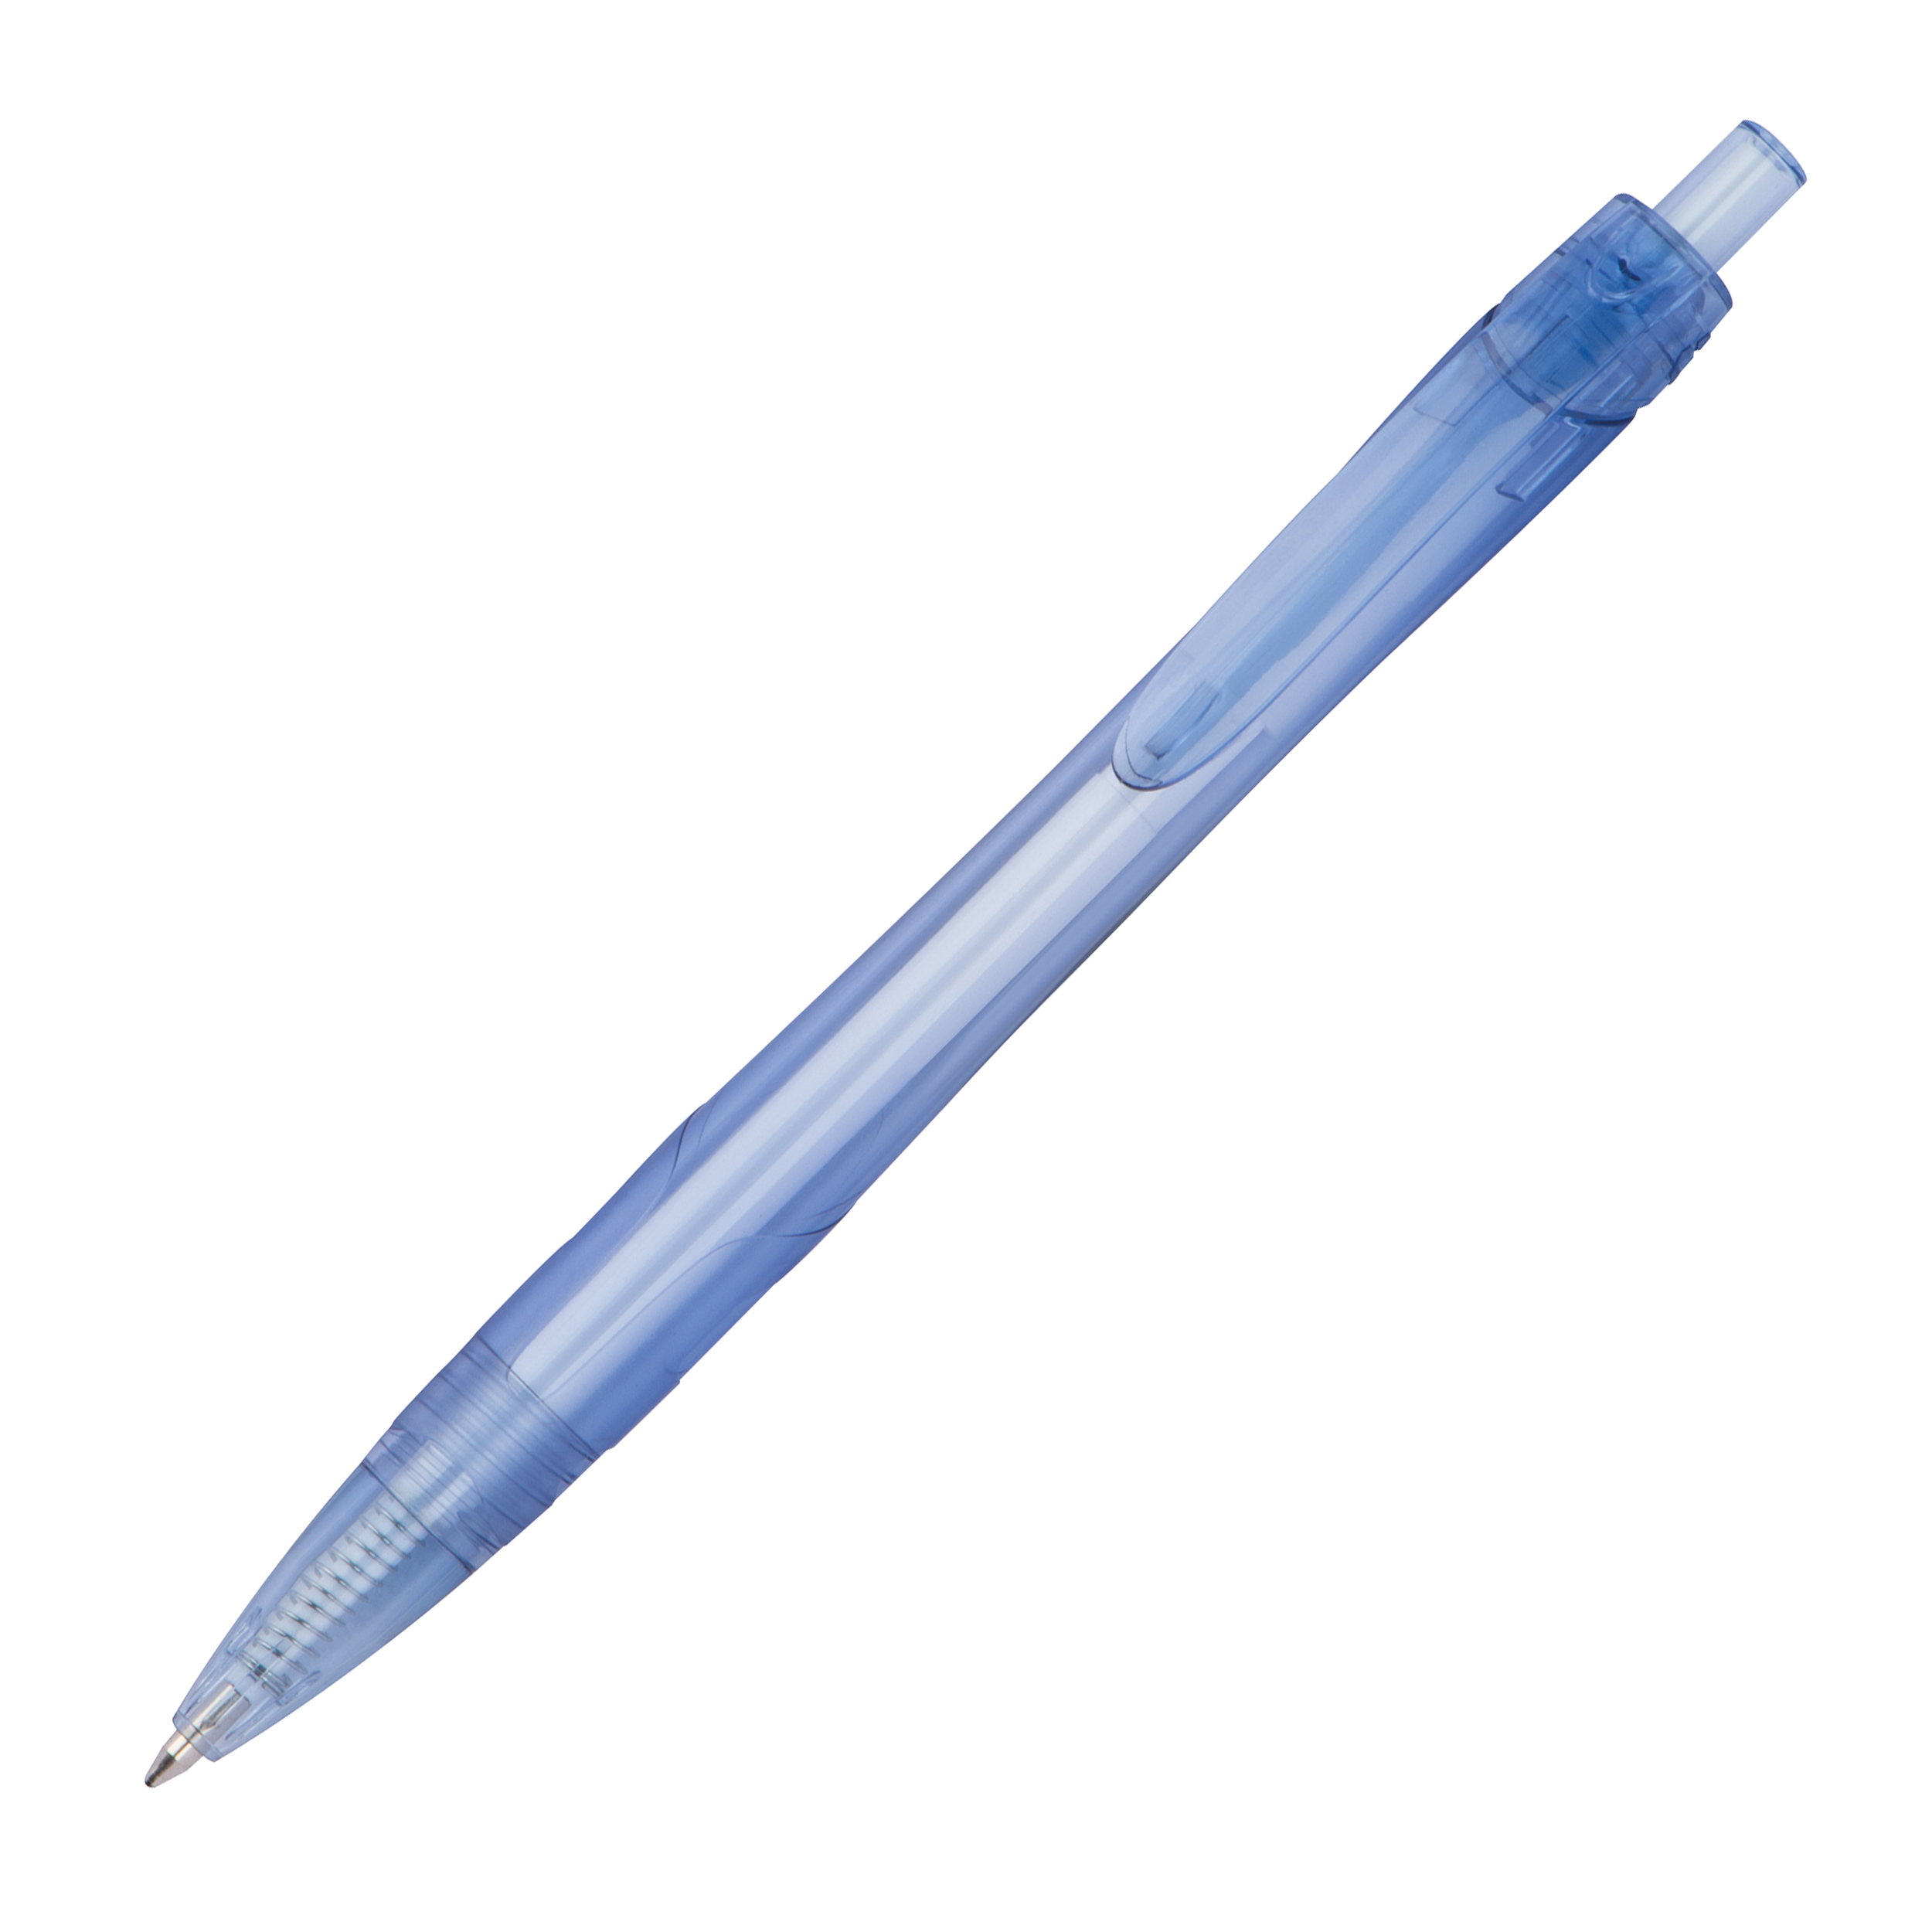 RPET pen